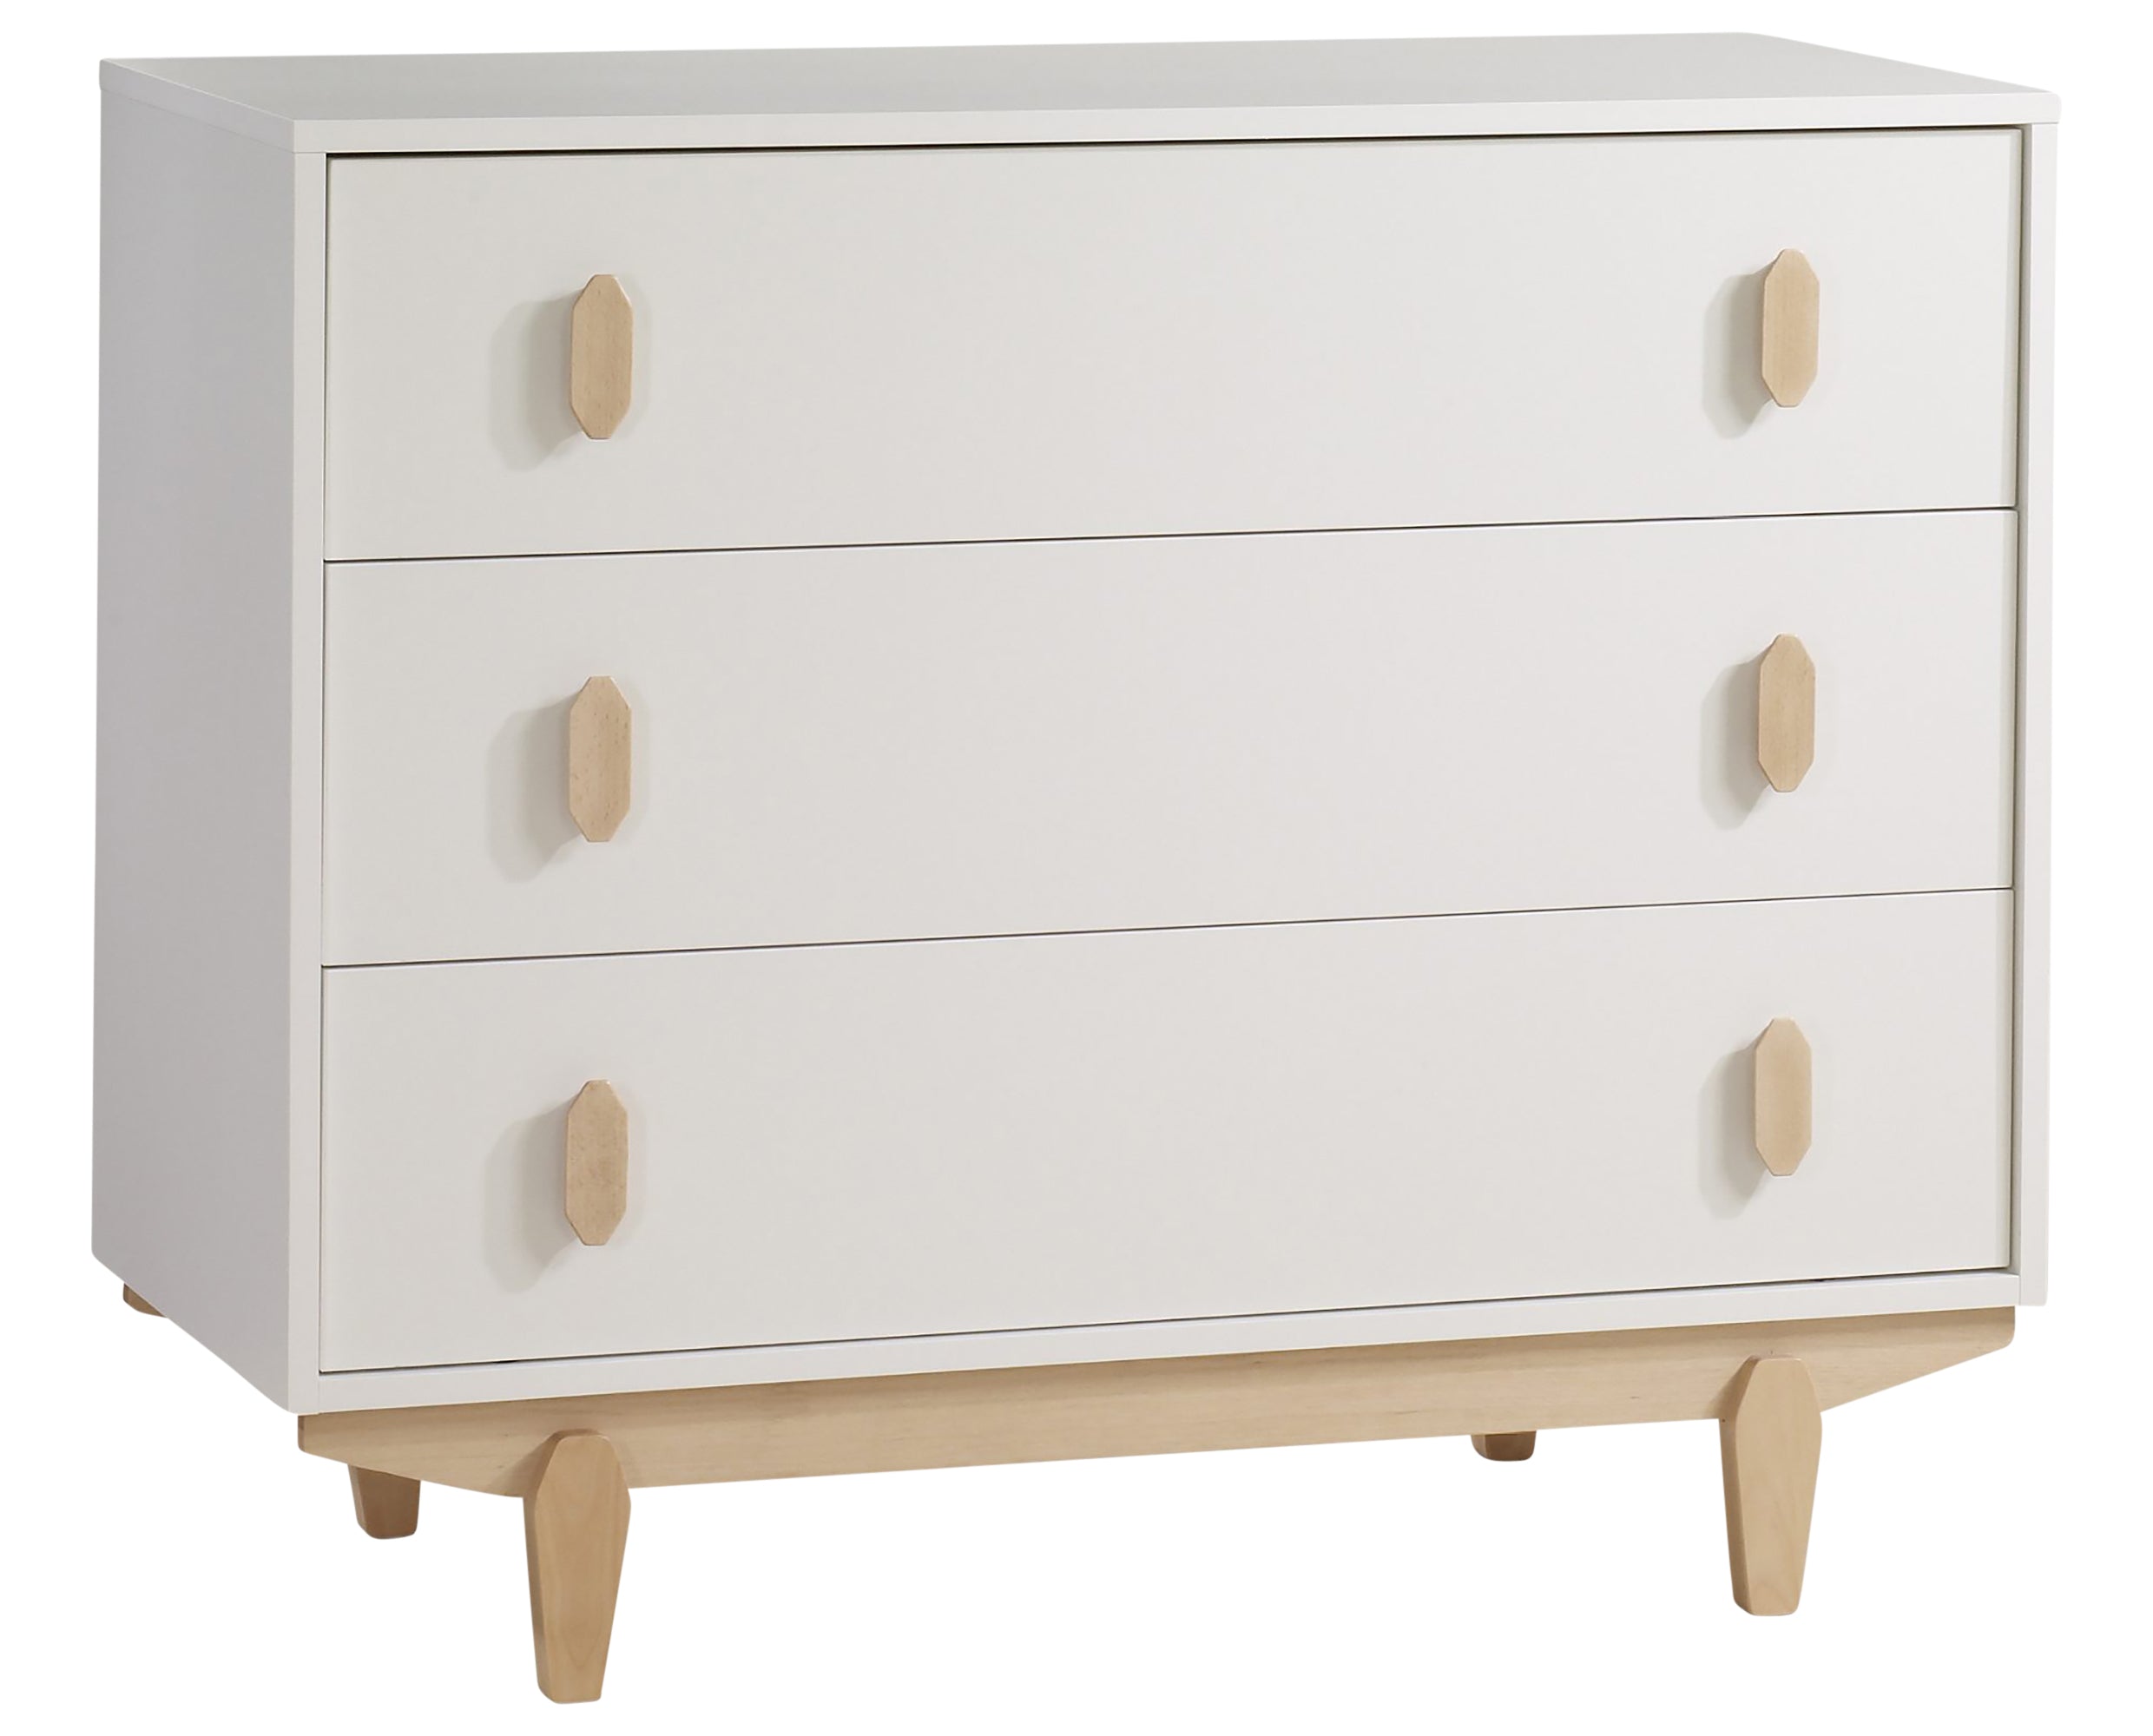 White Laminate and Natural Laminate with Natural Wood | Tate Crib &amp; Dresser Set | Valley Ridge Furniture